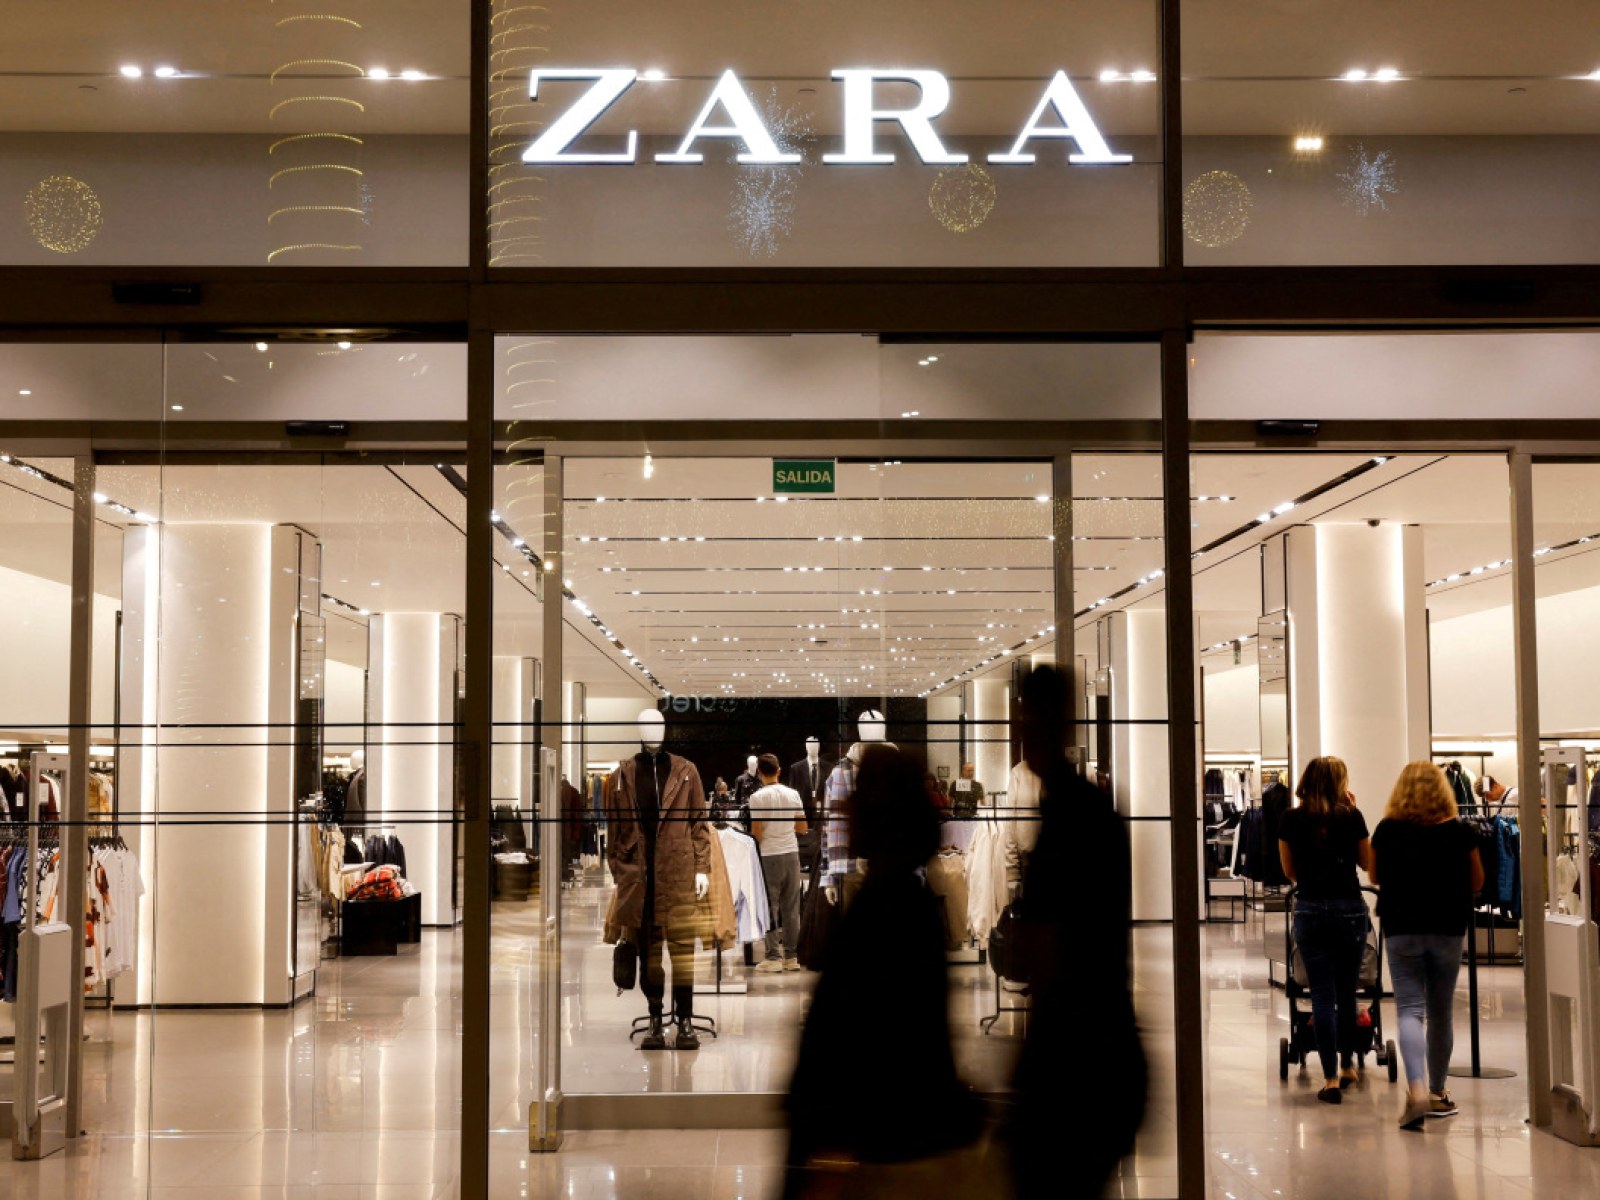 Rijd weg Alsjeblieft kijk metalen Zara, Bershka And Other Brands To Return To Russia Under New Names: Reports